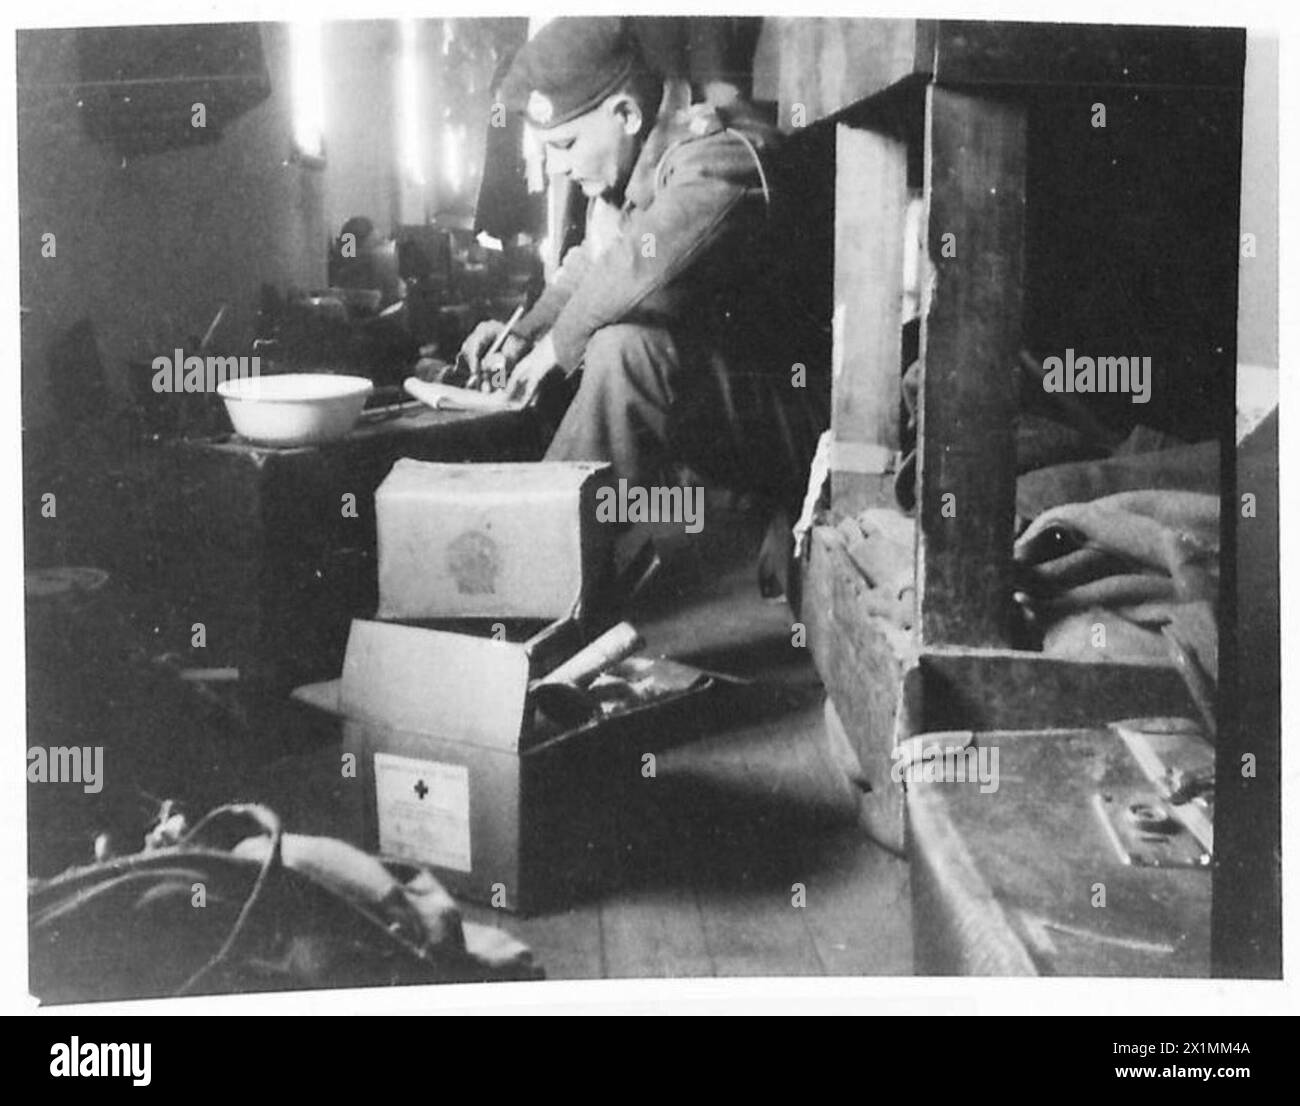 P.O.W. LIFE IN GERMANIA - Un ufficiale britannico di carri armati trova un posto tranquillo ma molto stretto per scrivere una lettera a casa da Moosburg. Novembre 1943, British Army, 21st Army Group Foto Stock